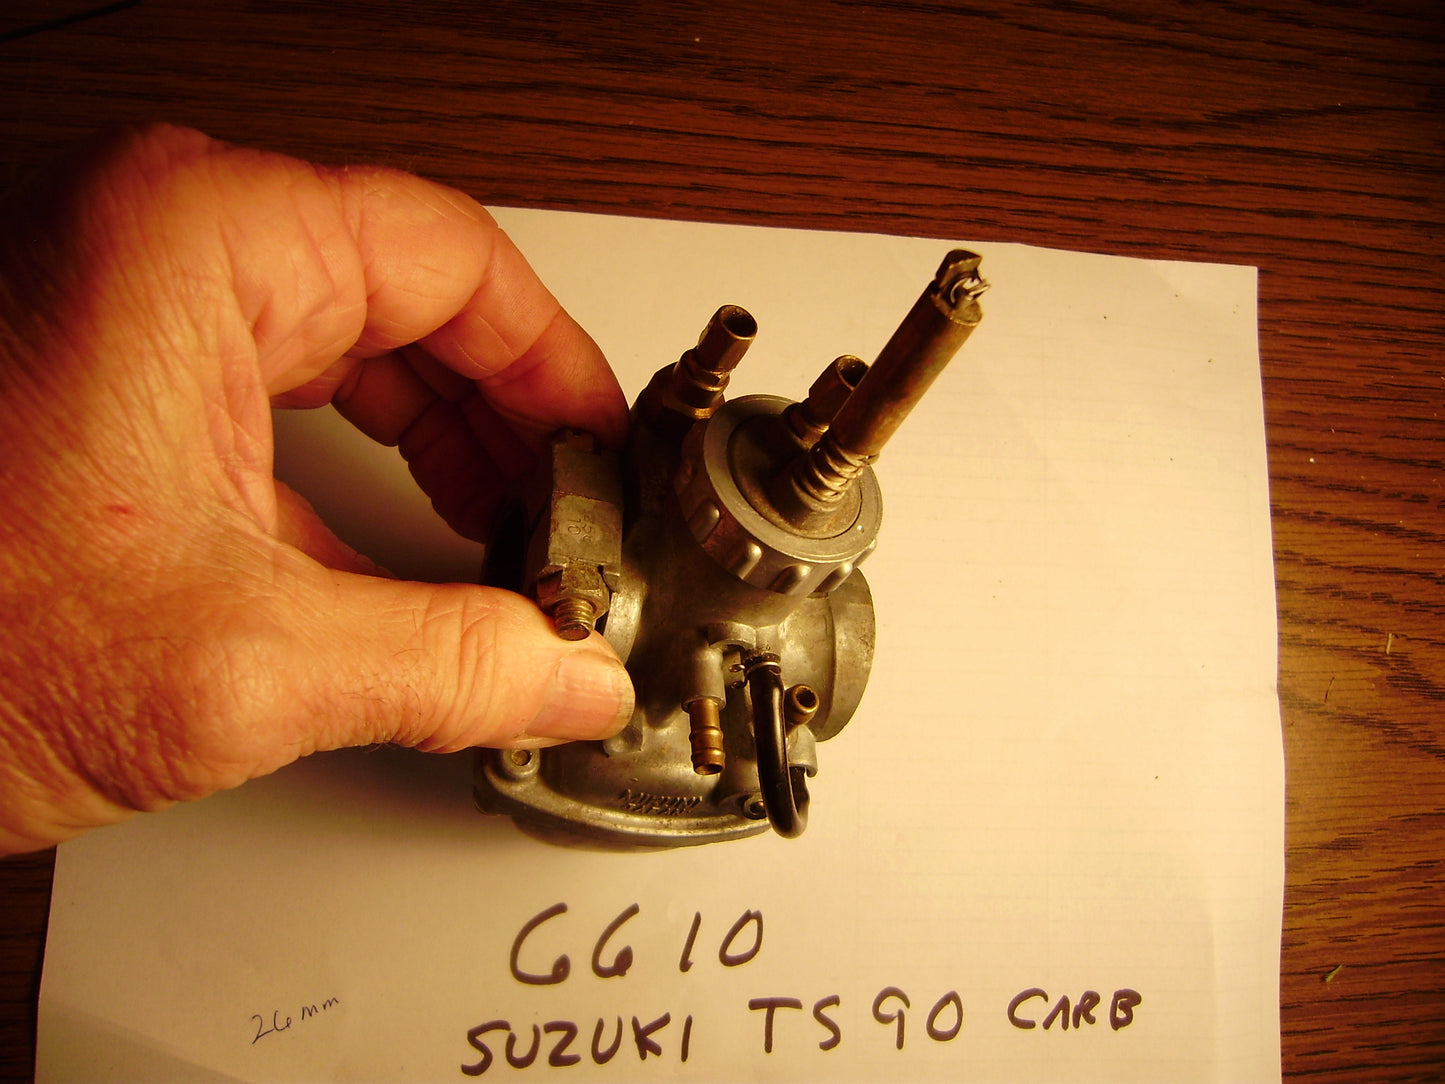 Suzuki TS90 OEM Carburetor sku 6610